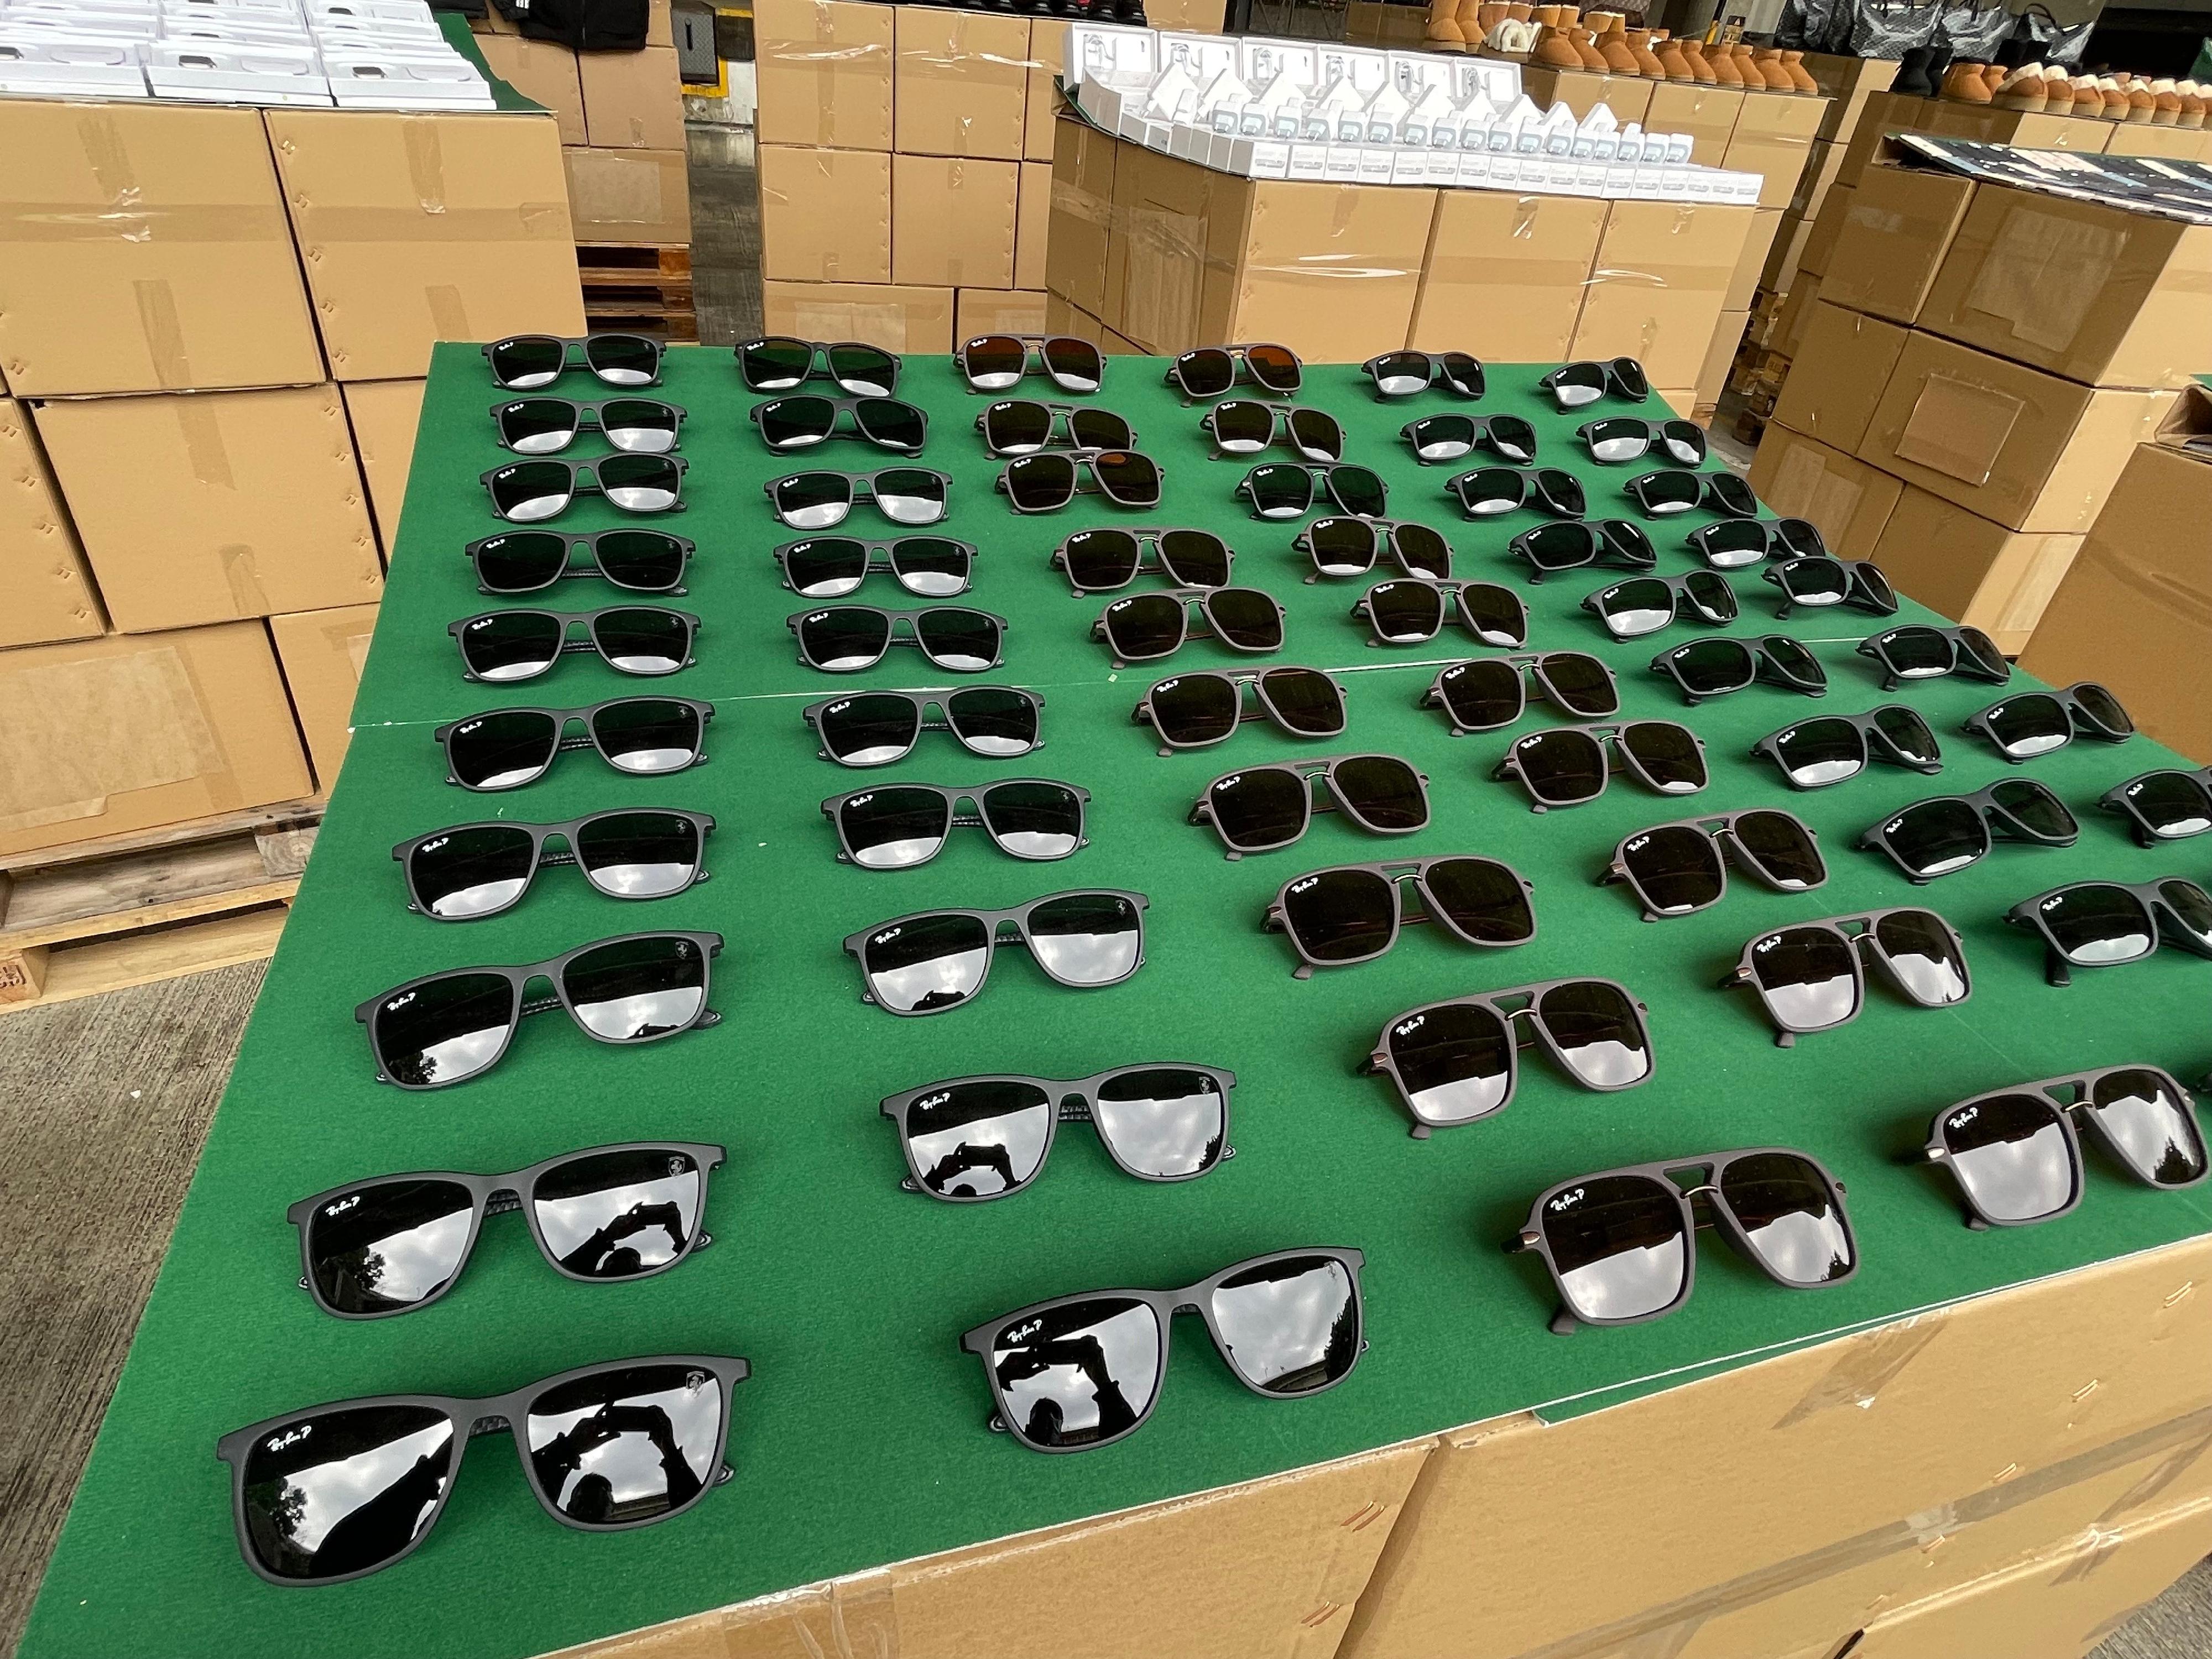 香港海关过去两周（一月三日至十六日）采取代号「追迹者IV」的执法行动，打击跨境转运及本地冒牌货物销售活动，检获共约九万件怀疑冒牌货物，估计市值共约四千万元。图示部分检获的怀疑冒牌太阳眼镜。

